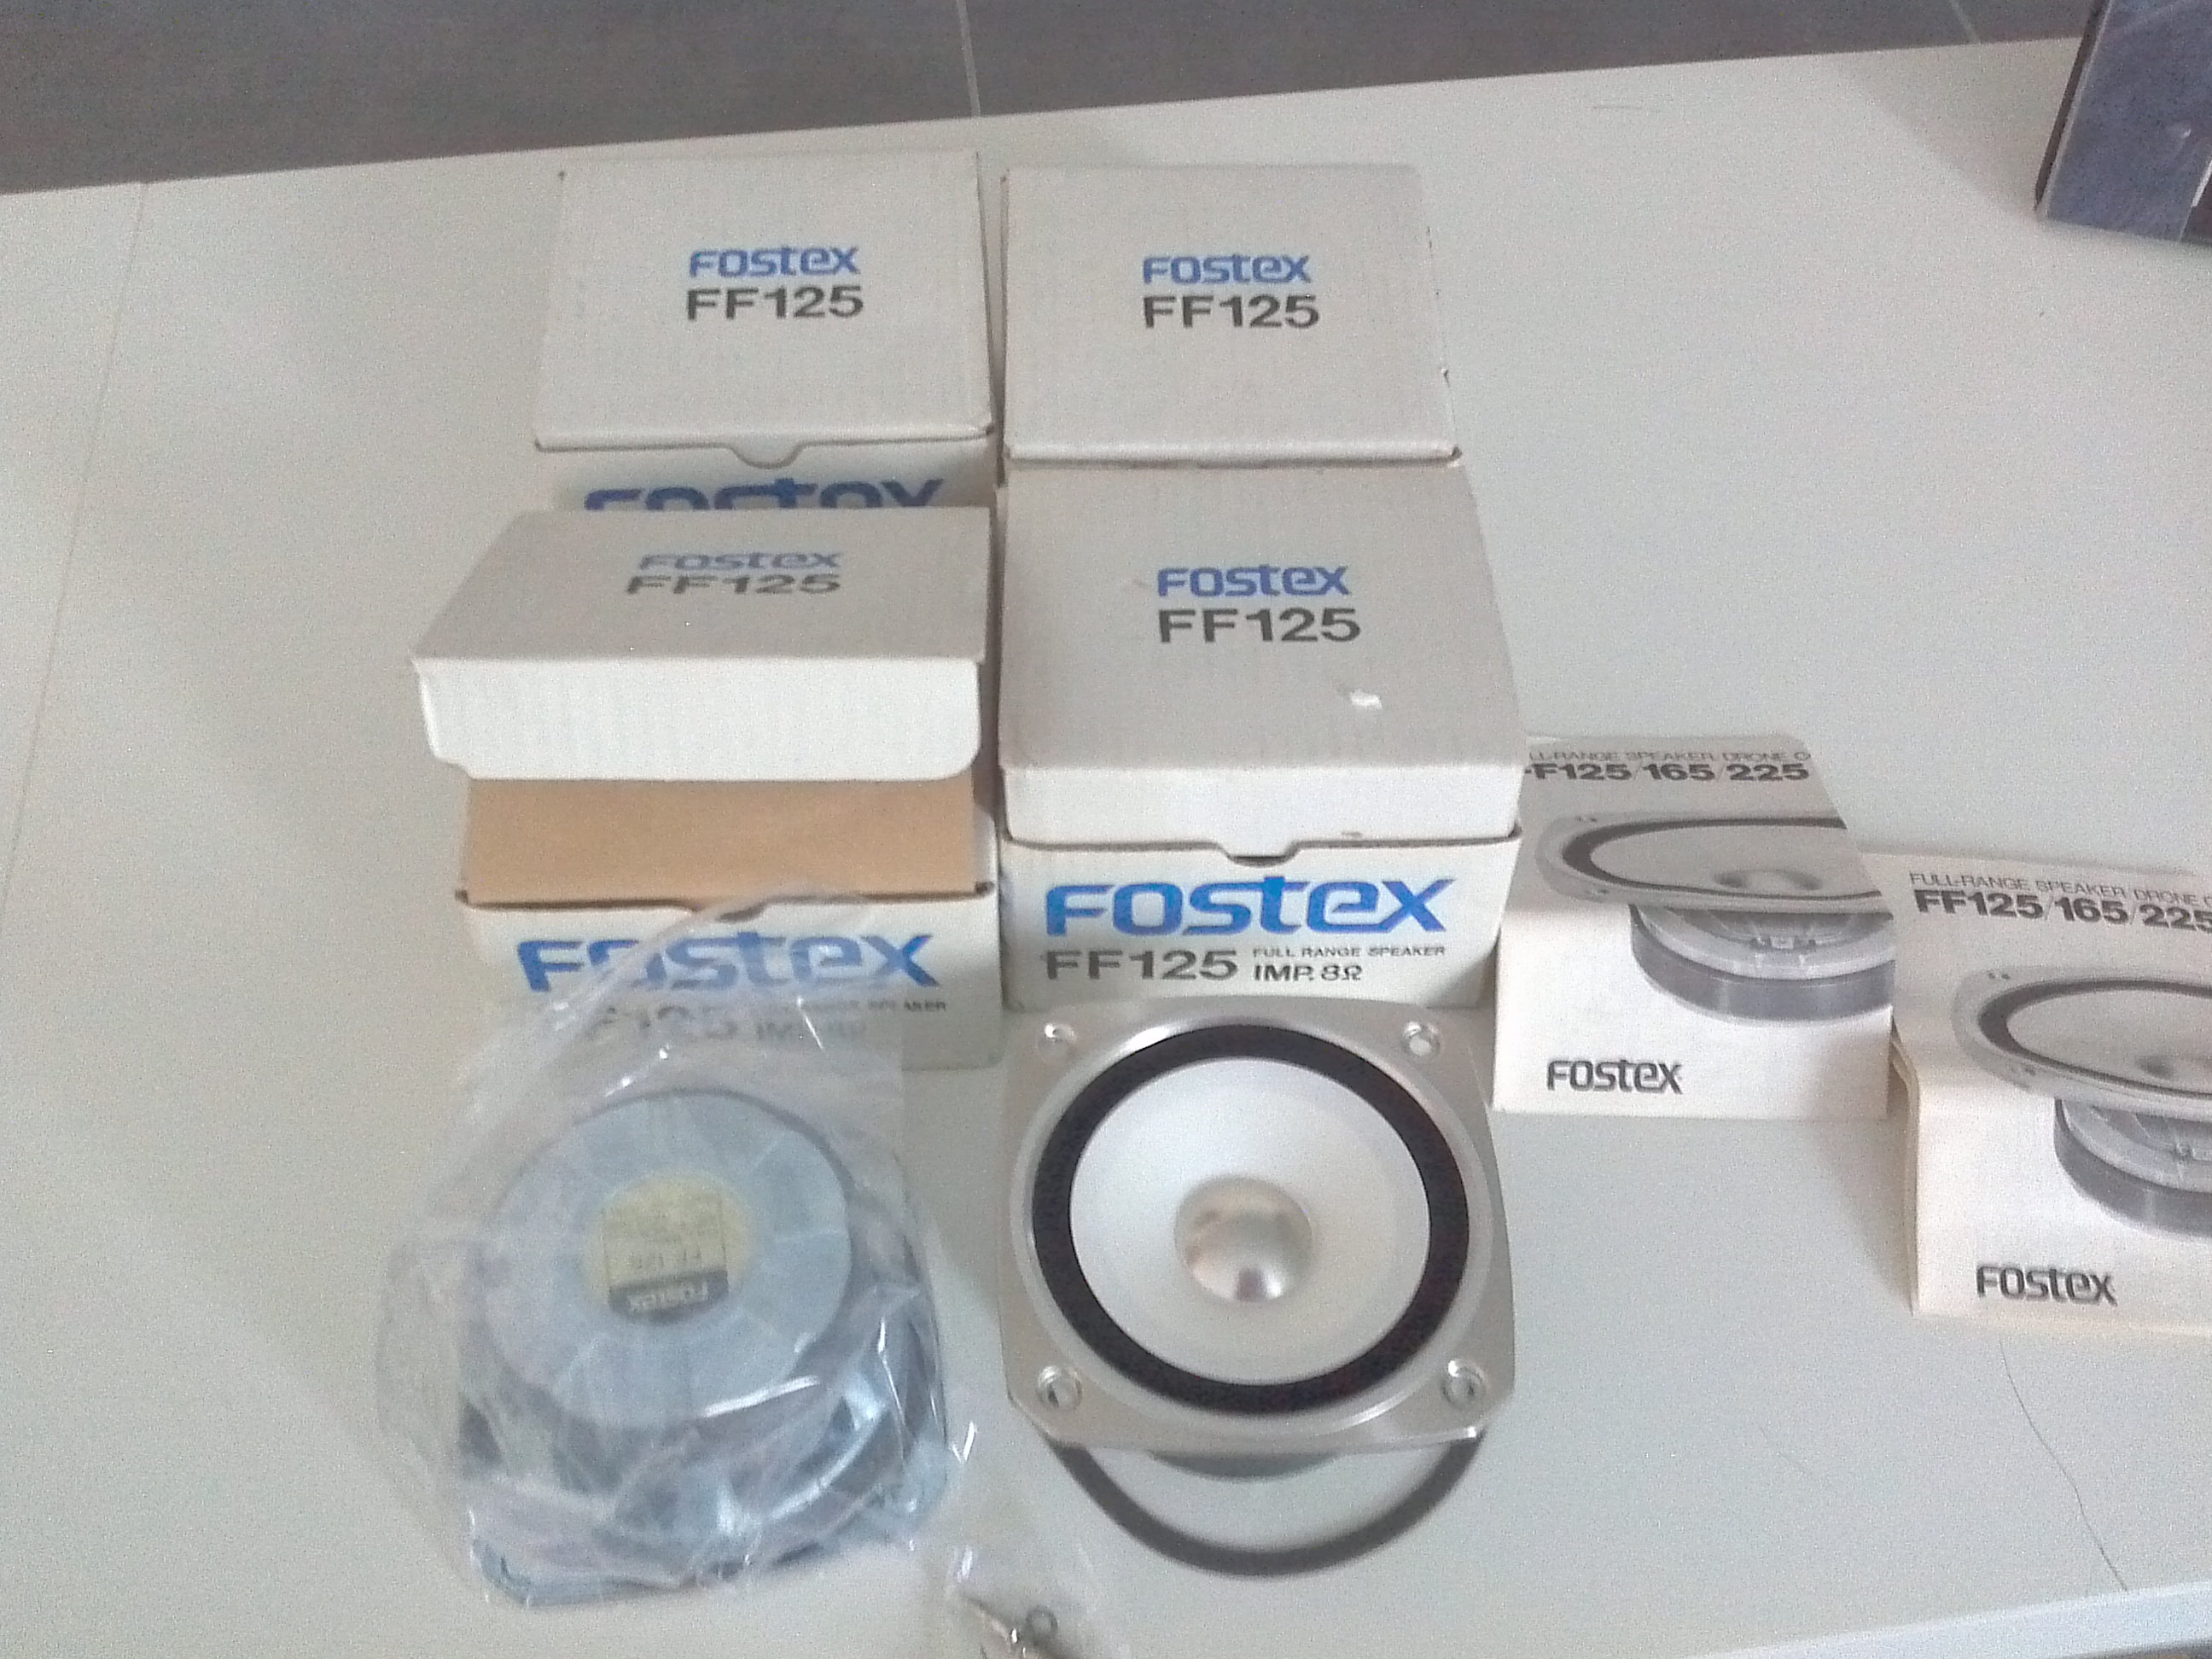 Fostex FF125 specifications | diyAudio